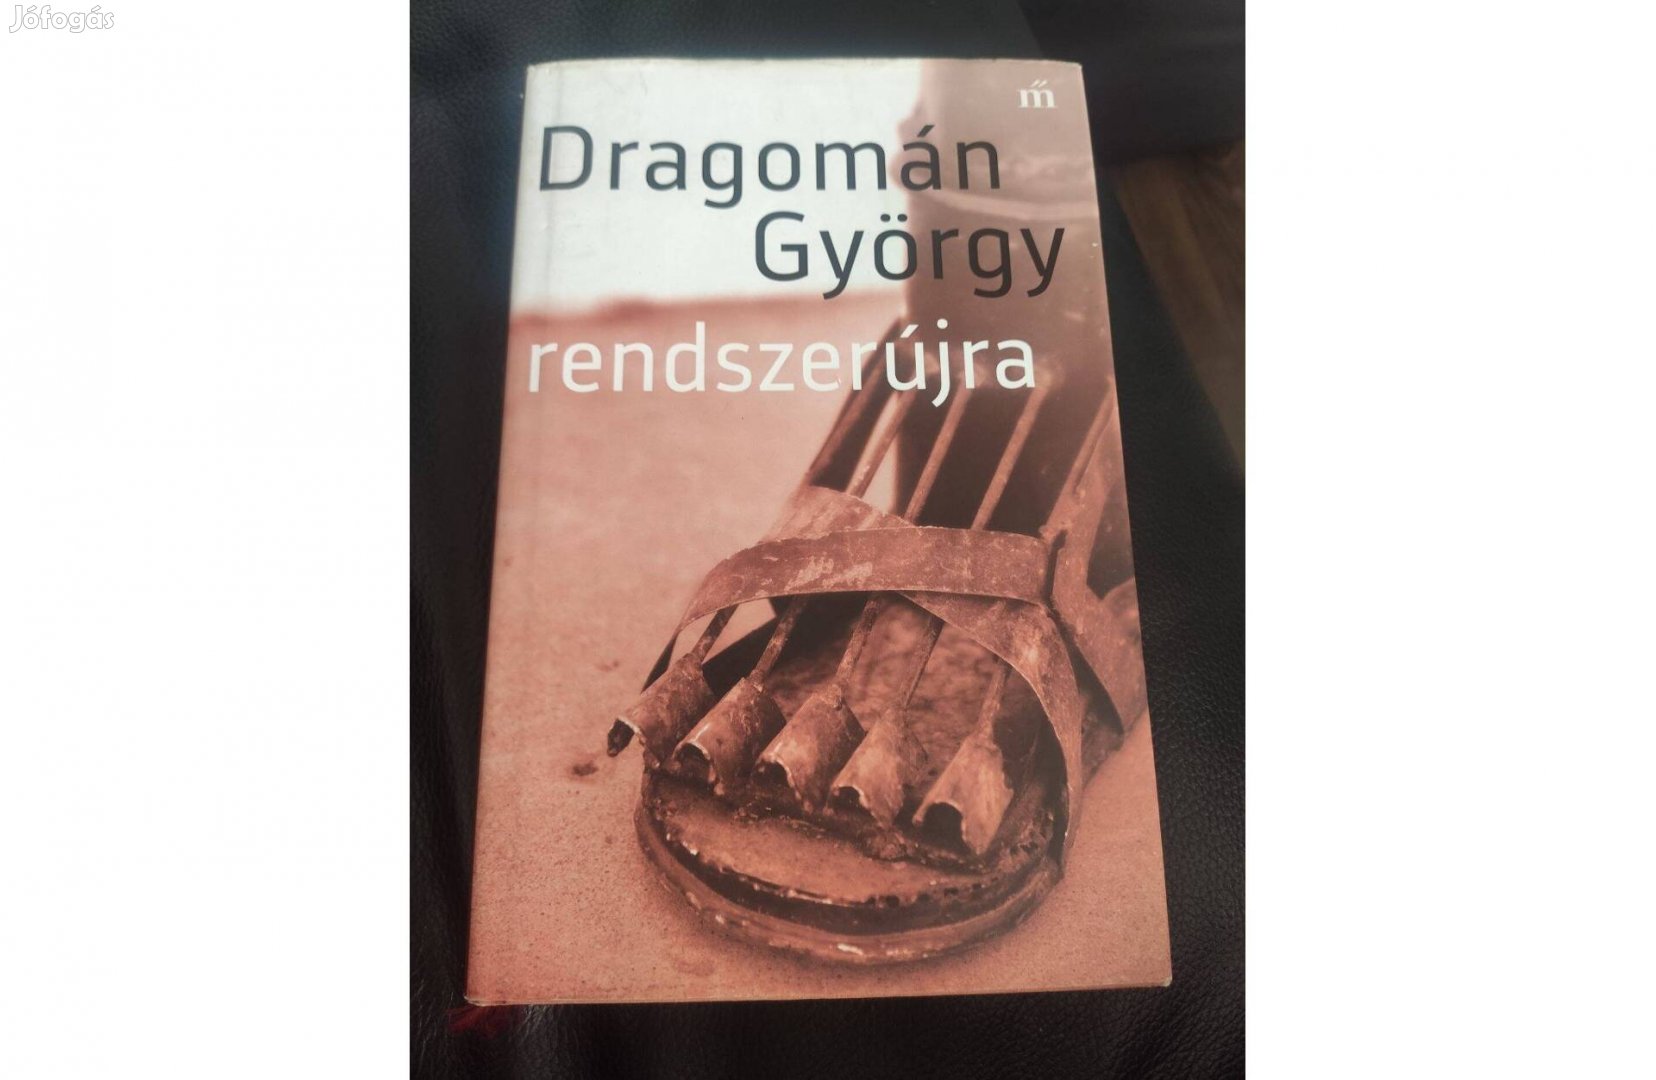 Dragomán György : Rendszerújra - szabadulástörténetek